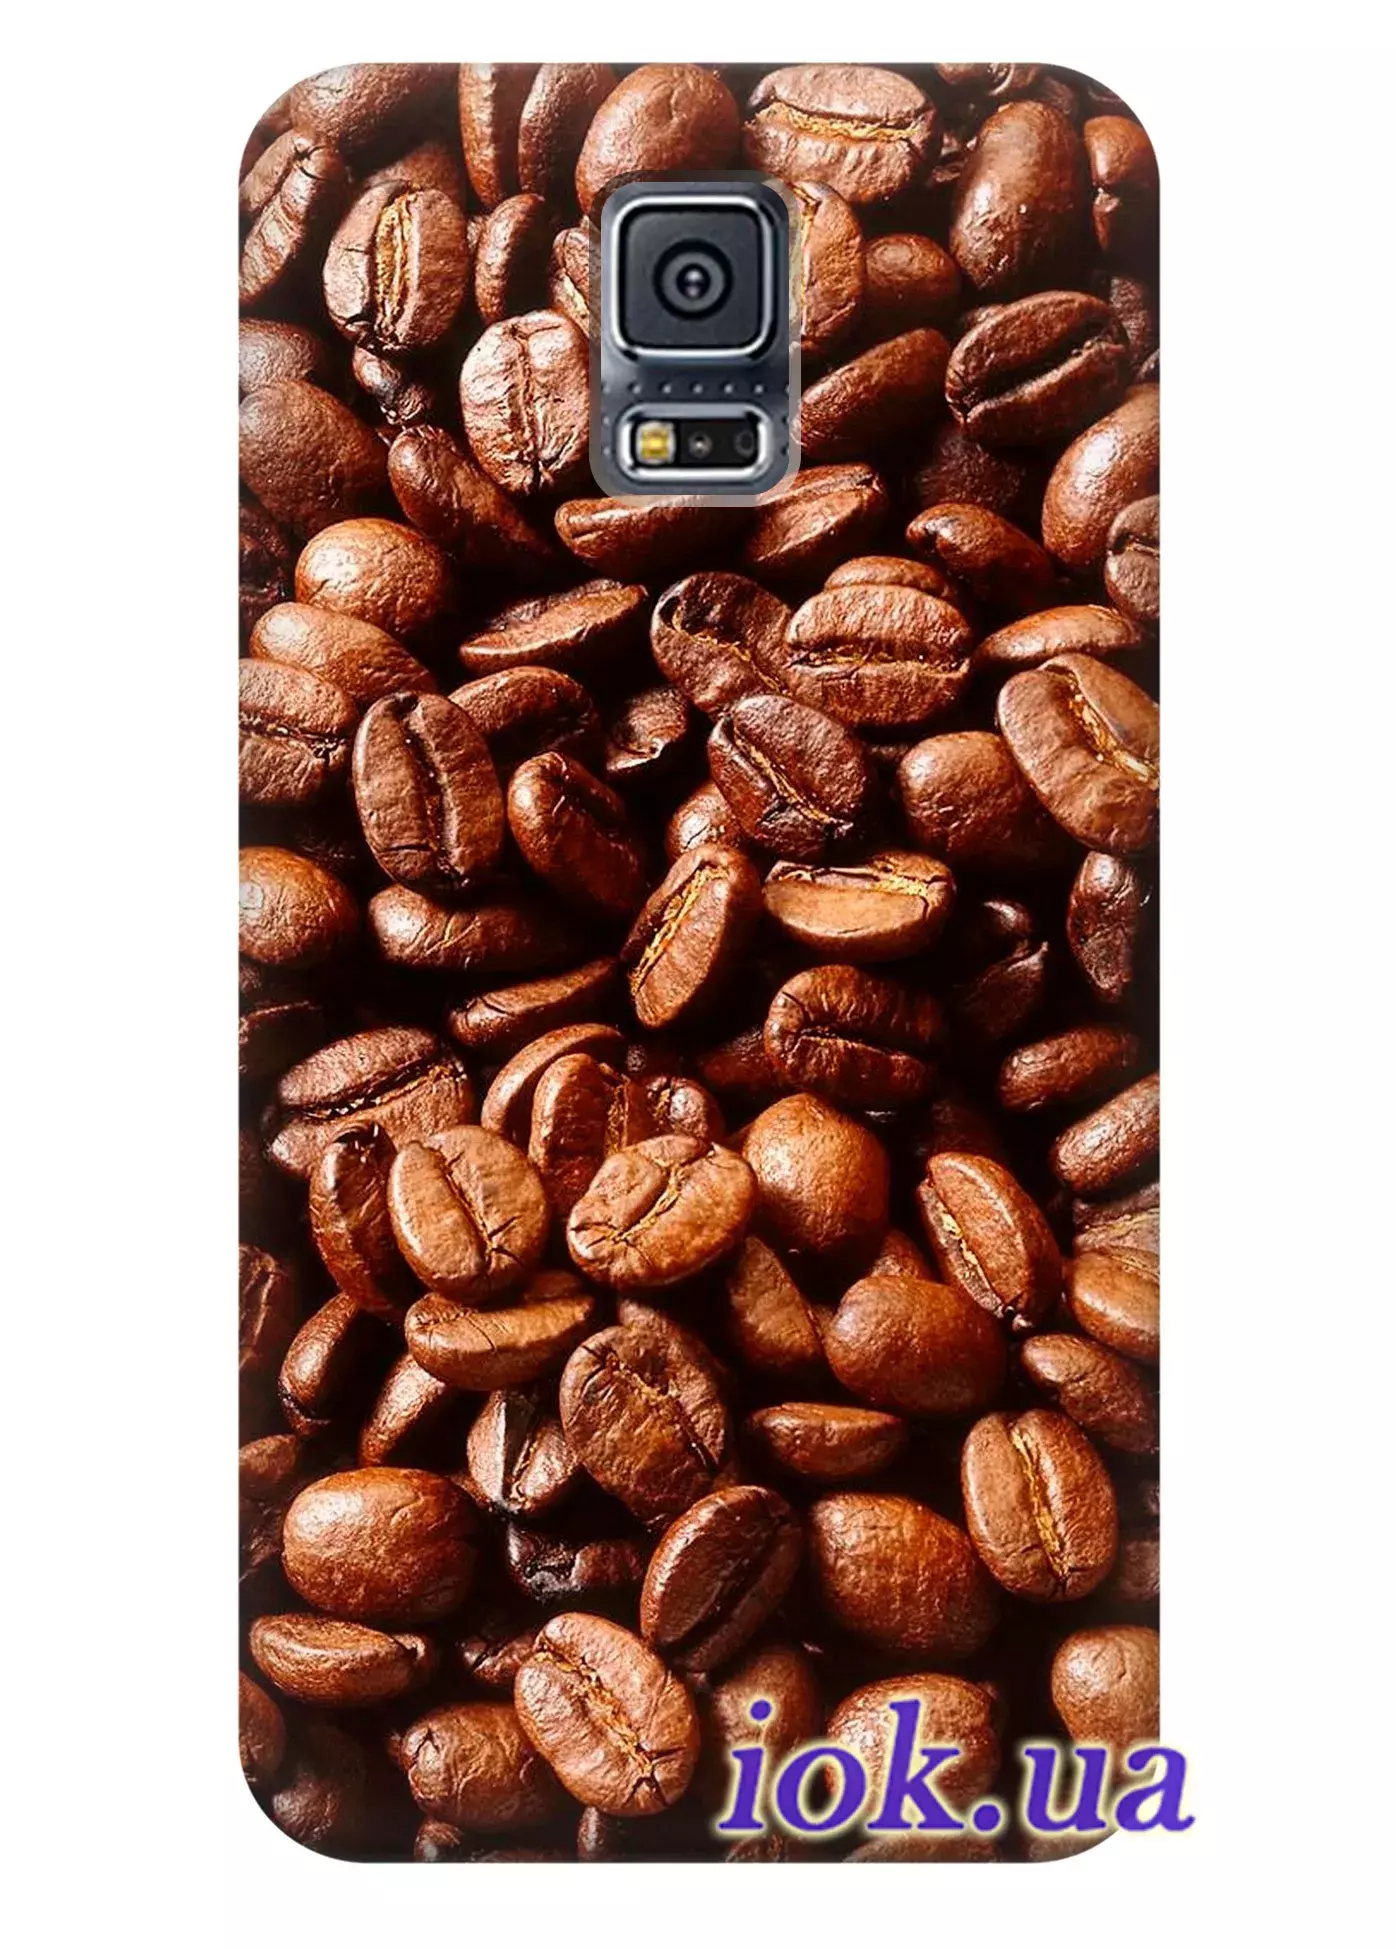 Чехол для Galaxy S5 Plus - Кофейные зёрна